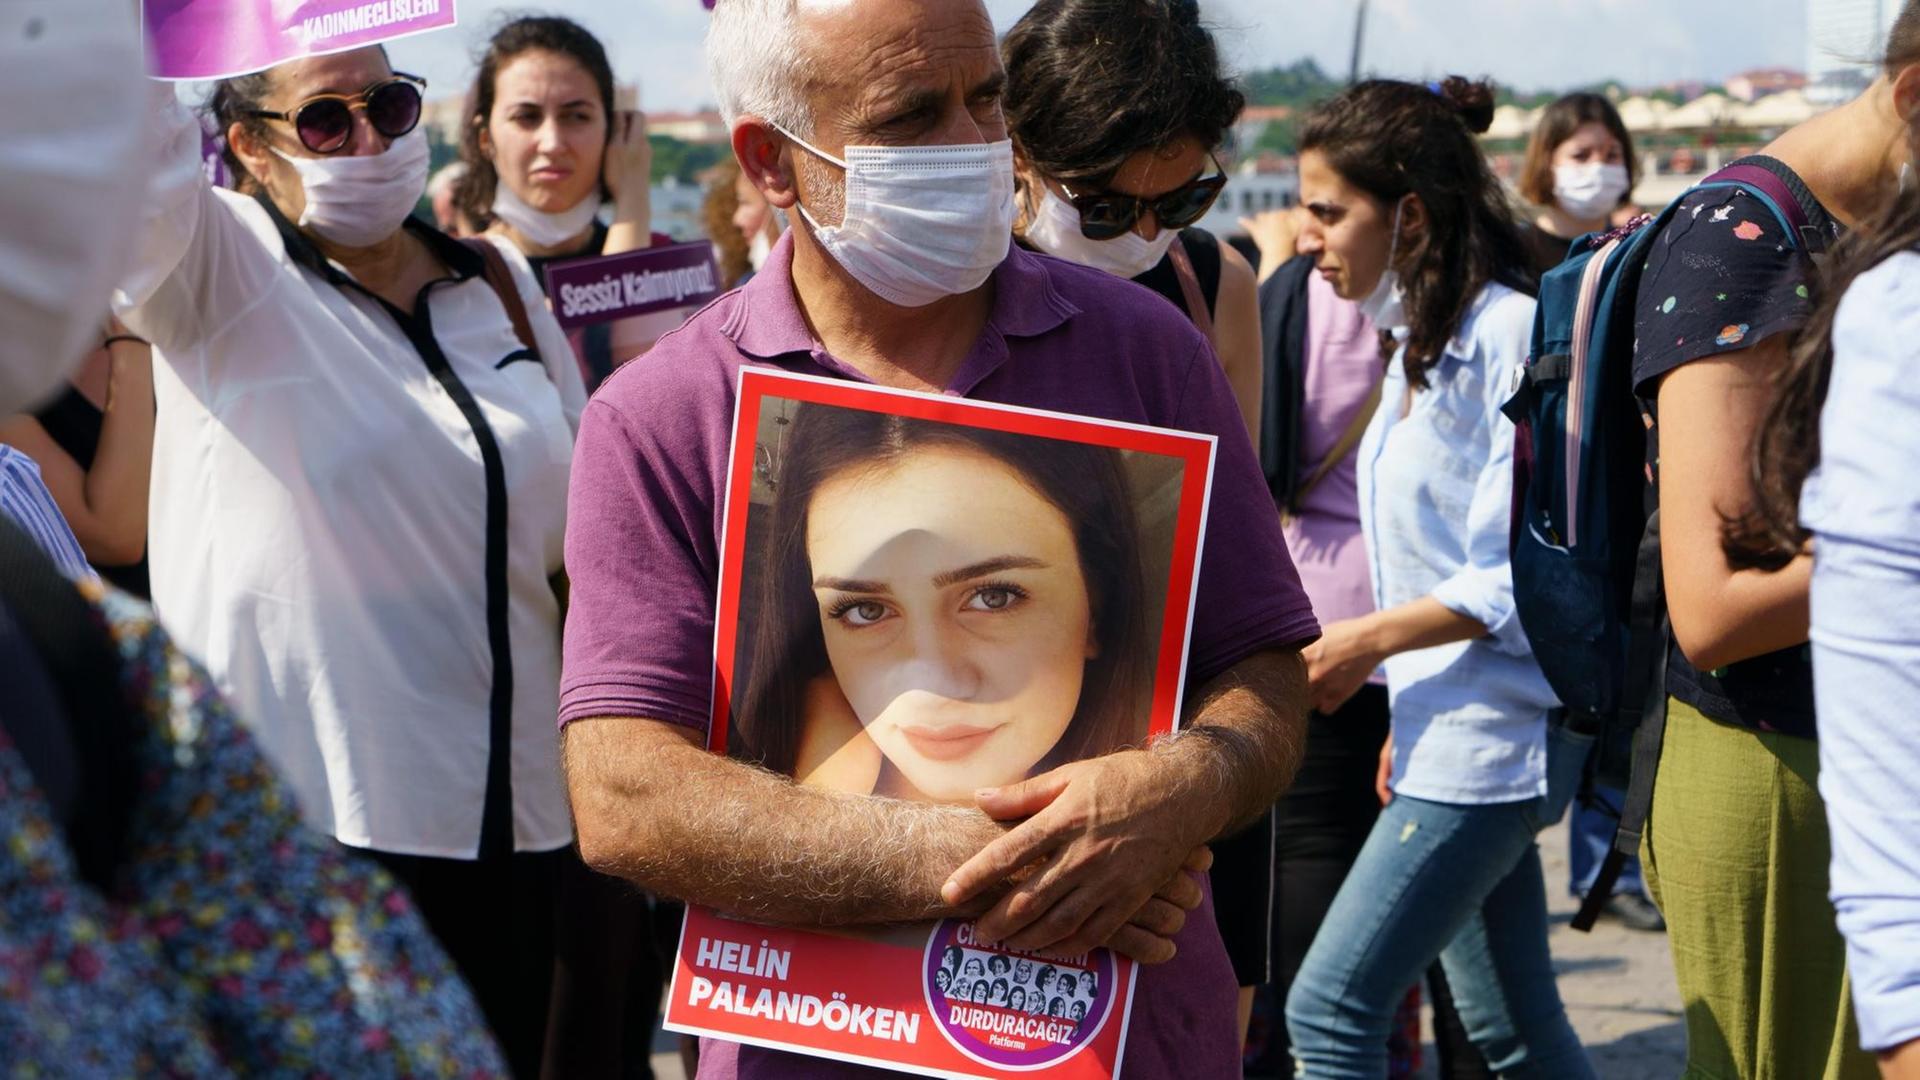 Der Vater der jungen Helin Palandöken hält auf eine Kundgebung ein vergrößertes Foto von ihr in den Händen und trägt dabei Mundschutz.